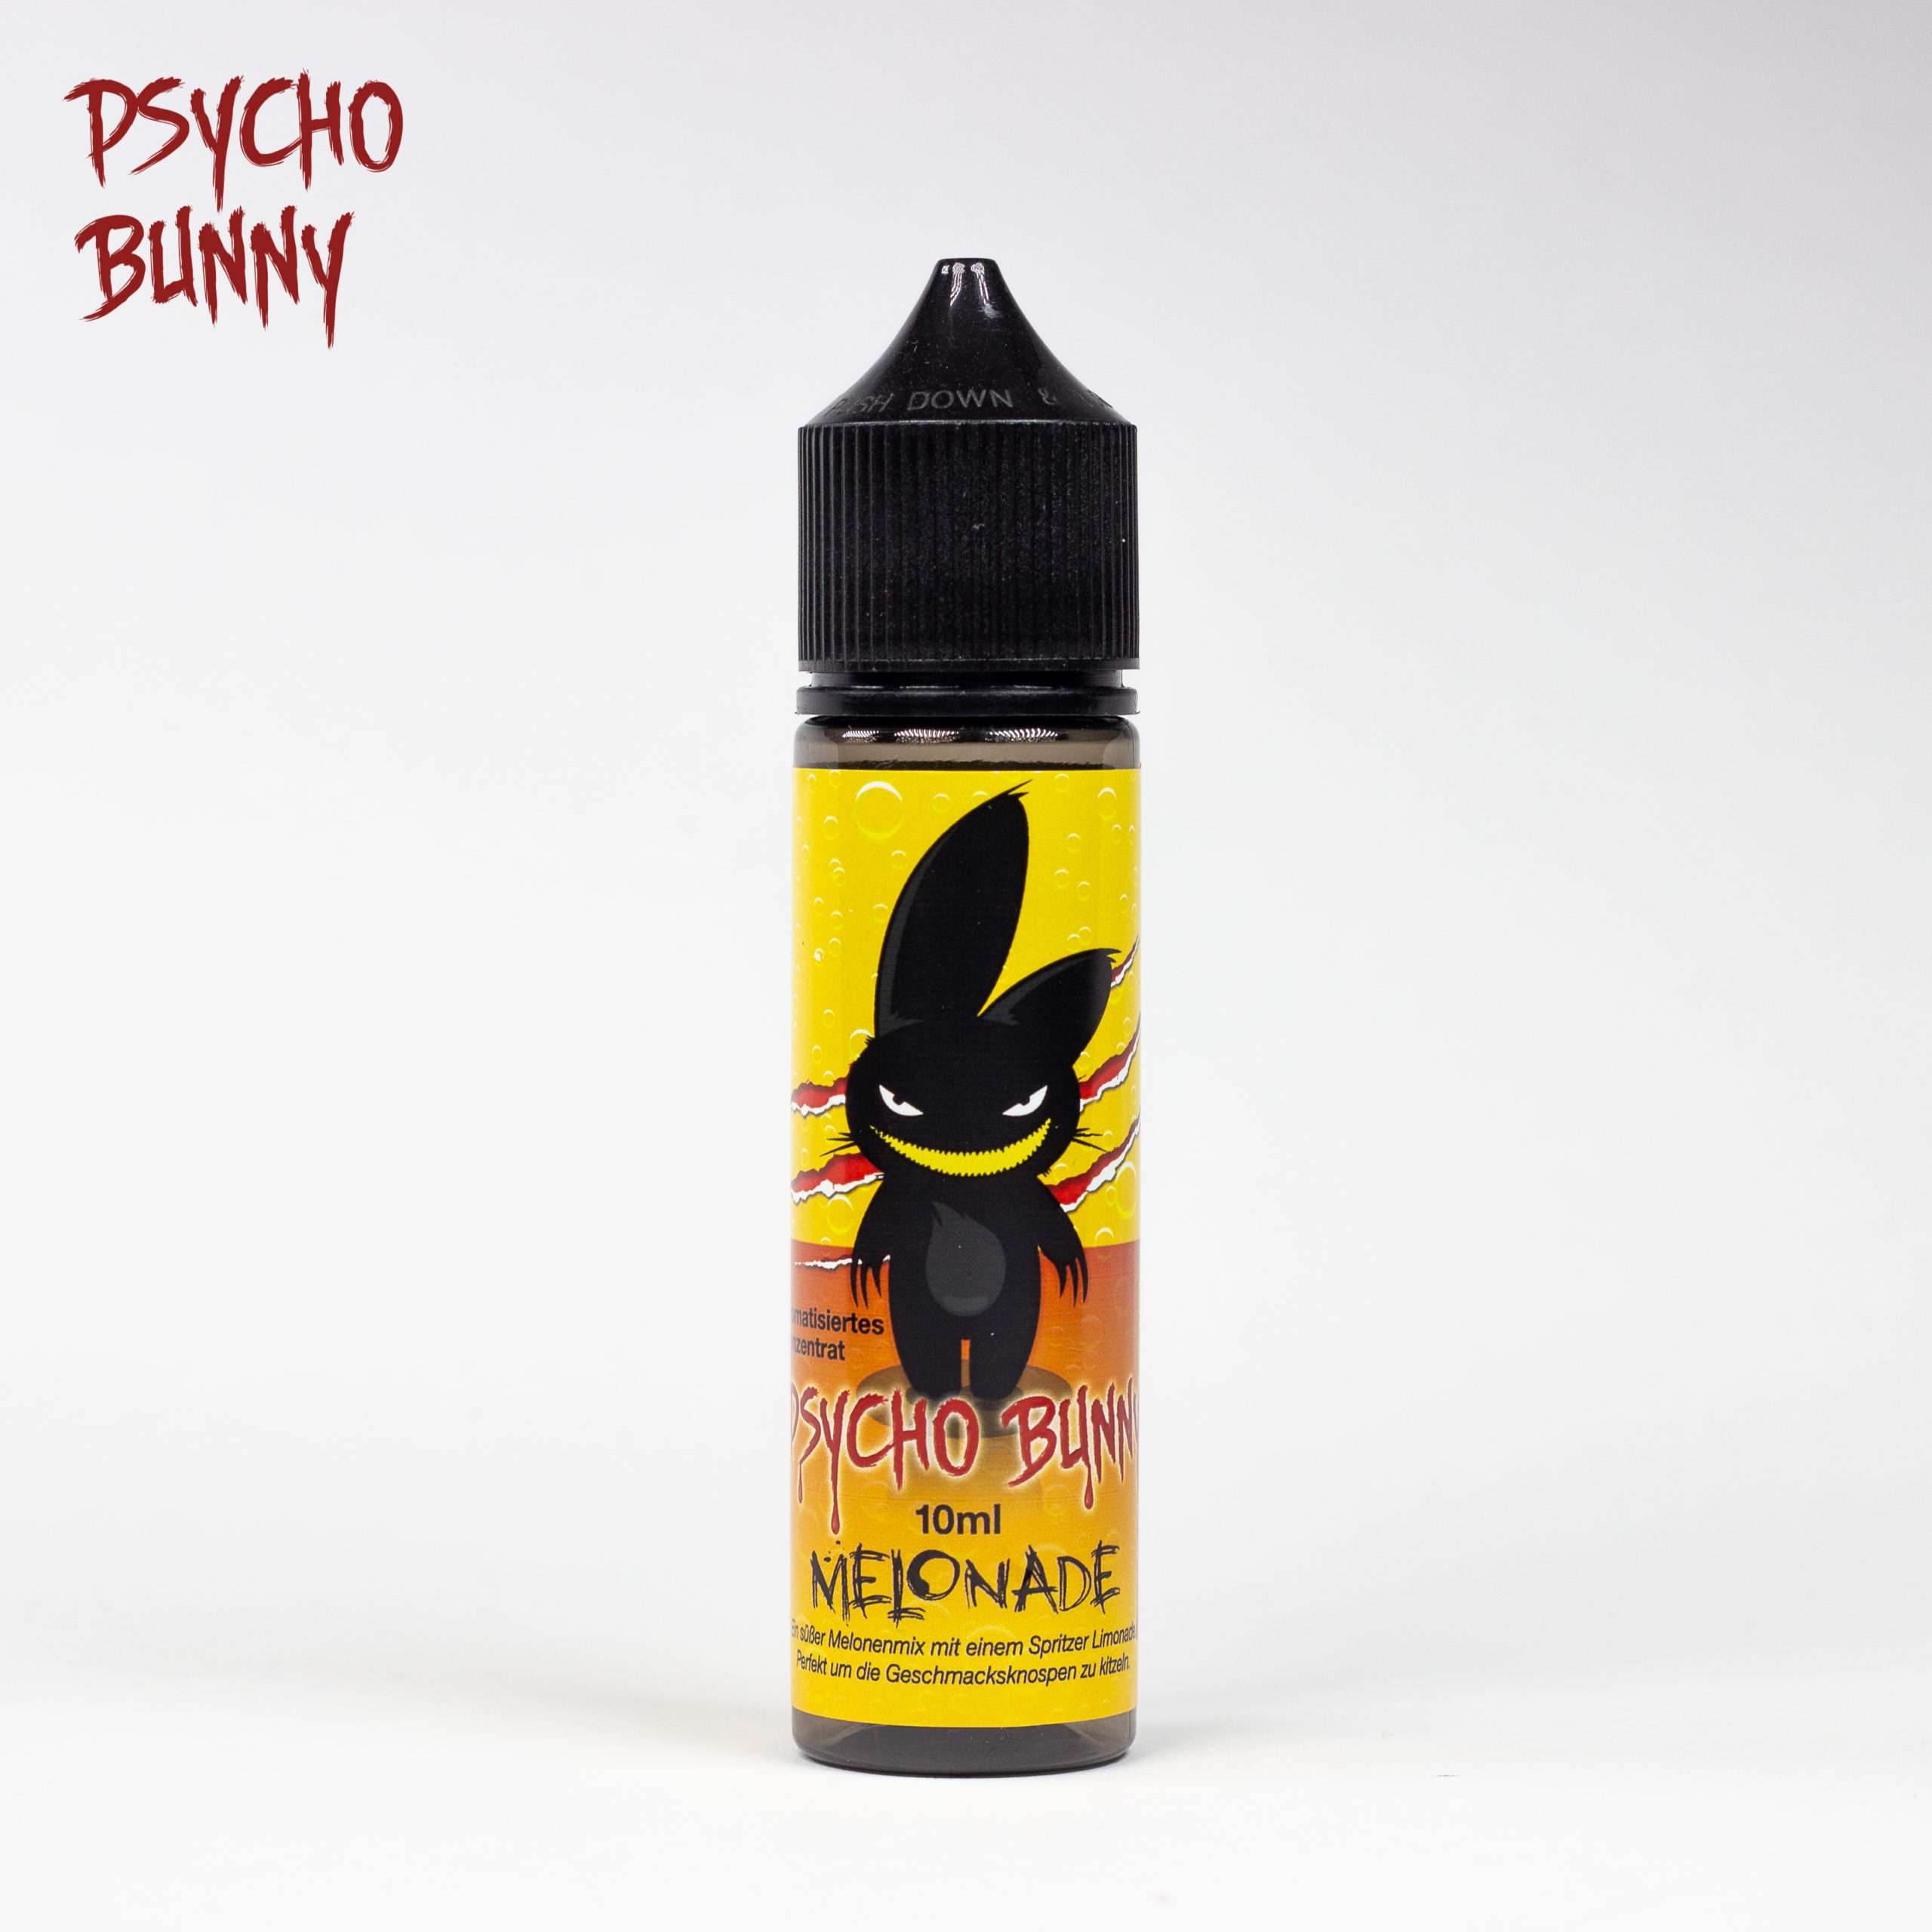 Psycho Bunny - Melonade - 50ml